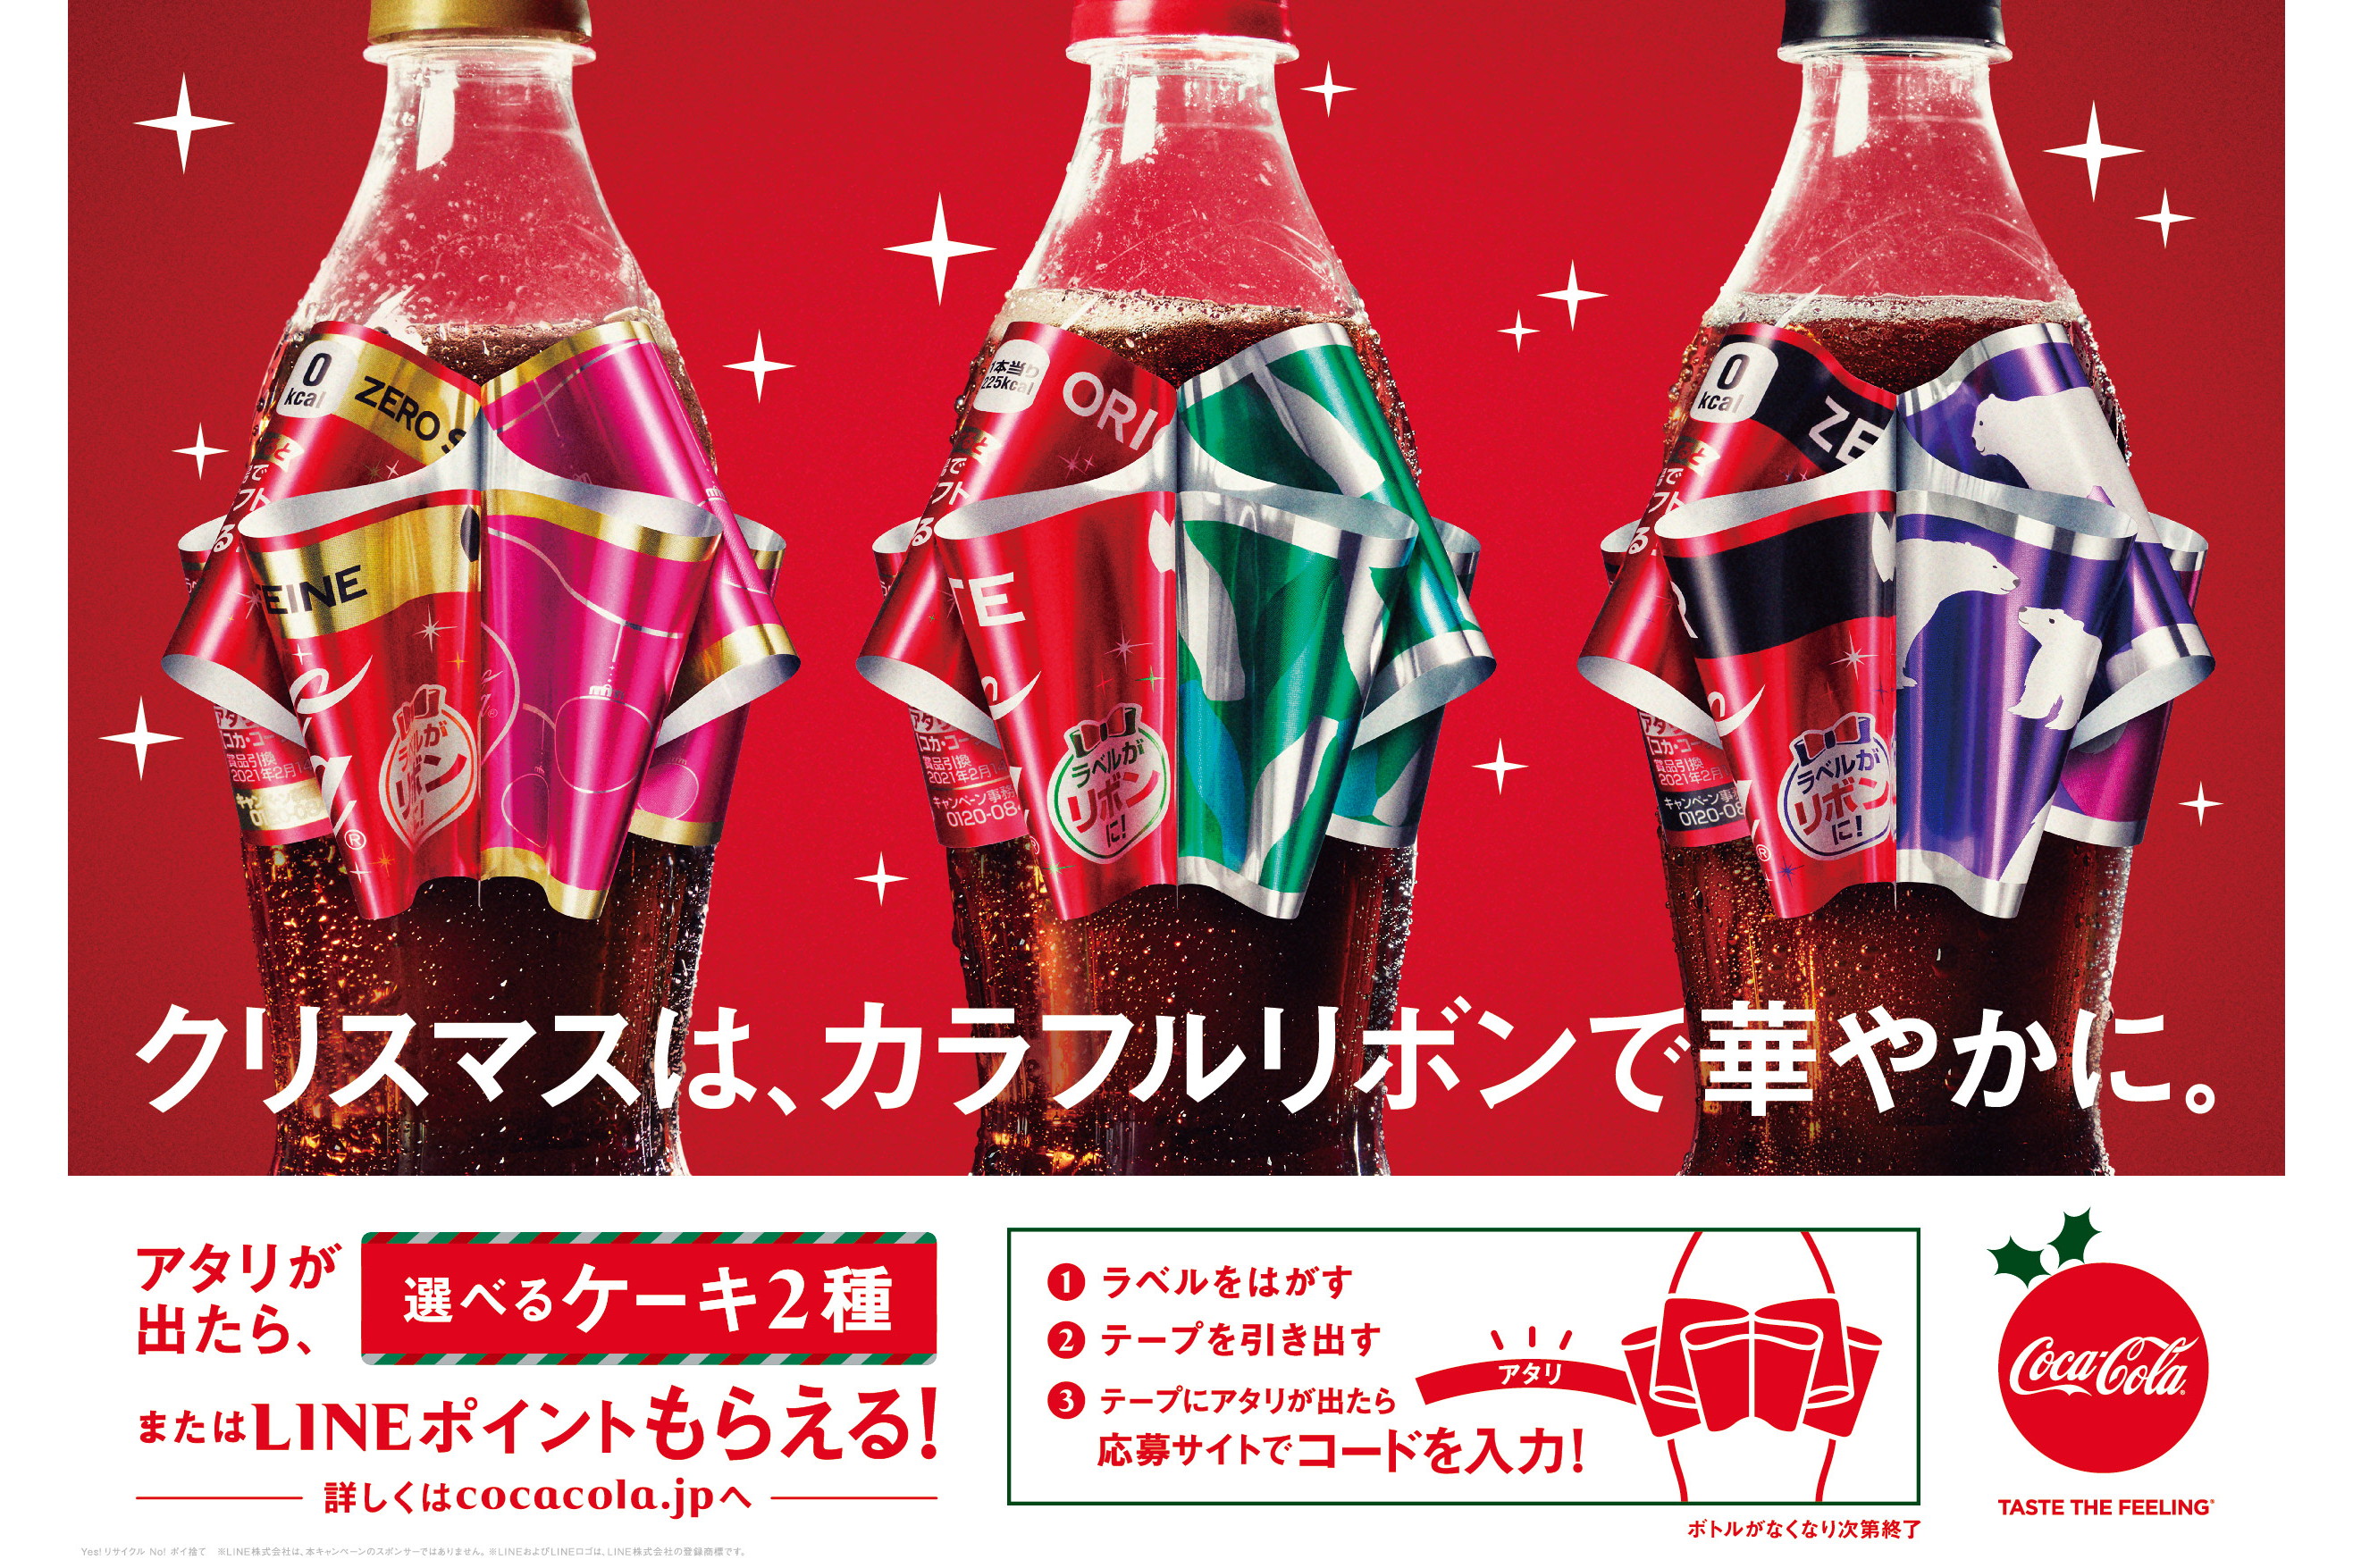 コカ・コーラ ボトル (キャンペーンボトル) - ノベルティグッズ